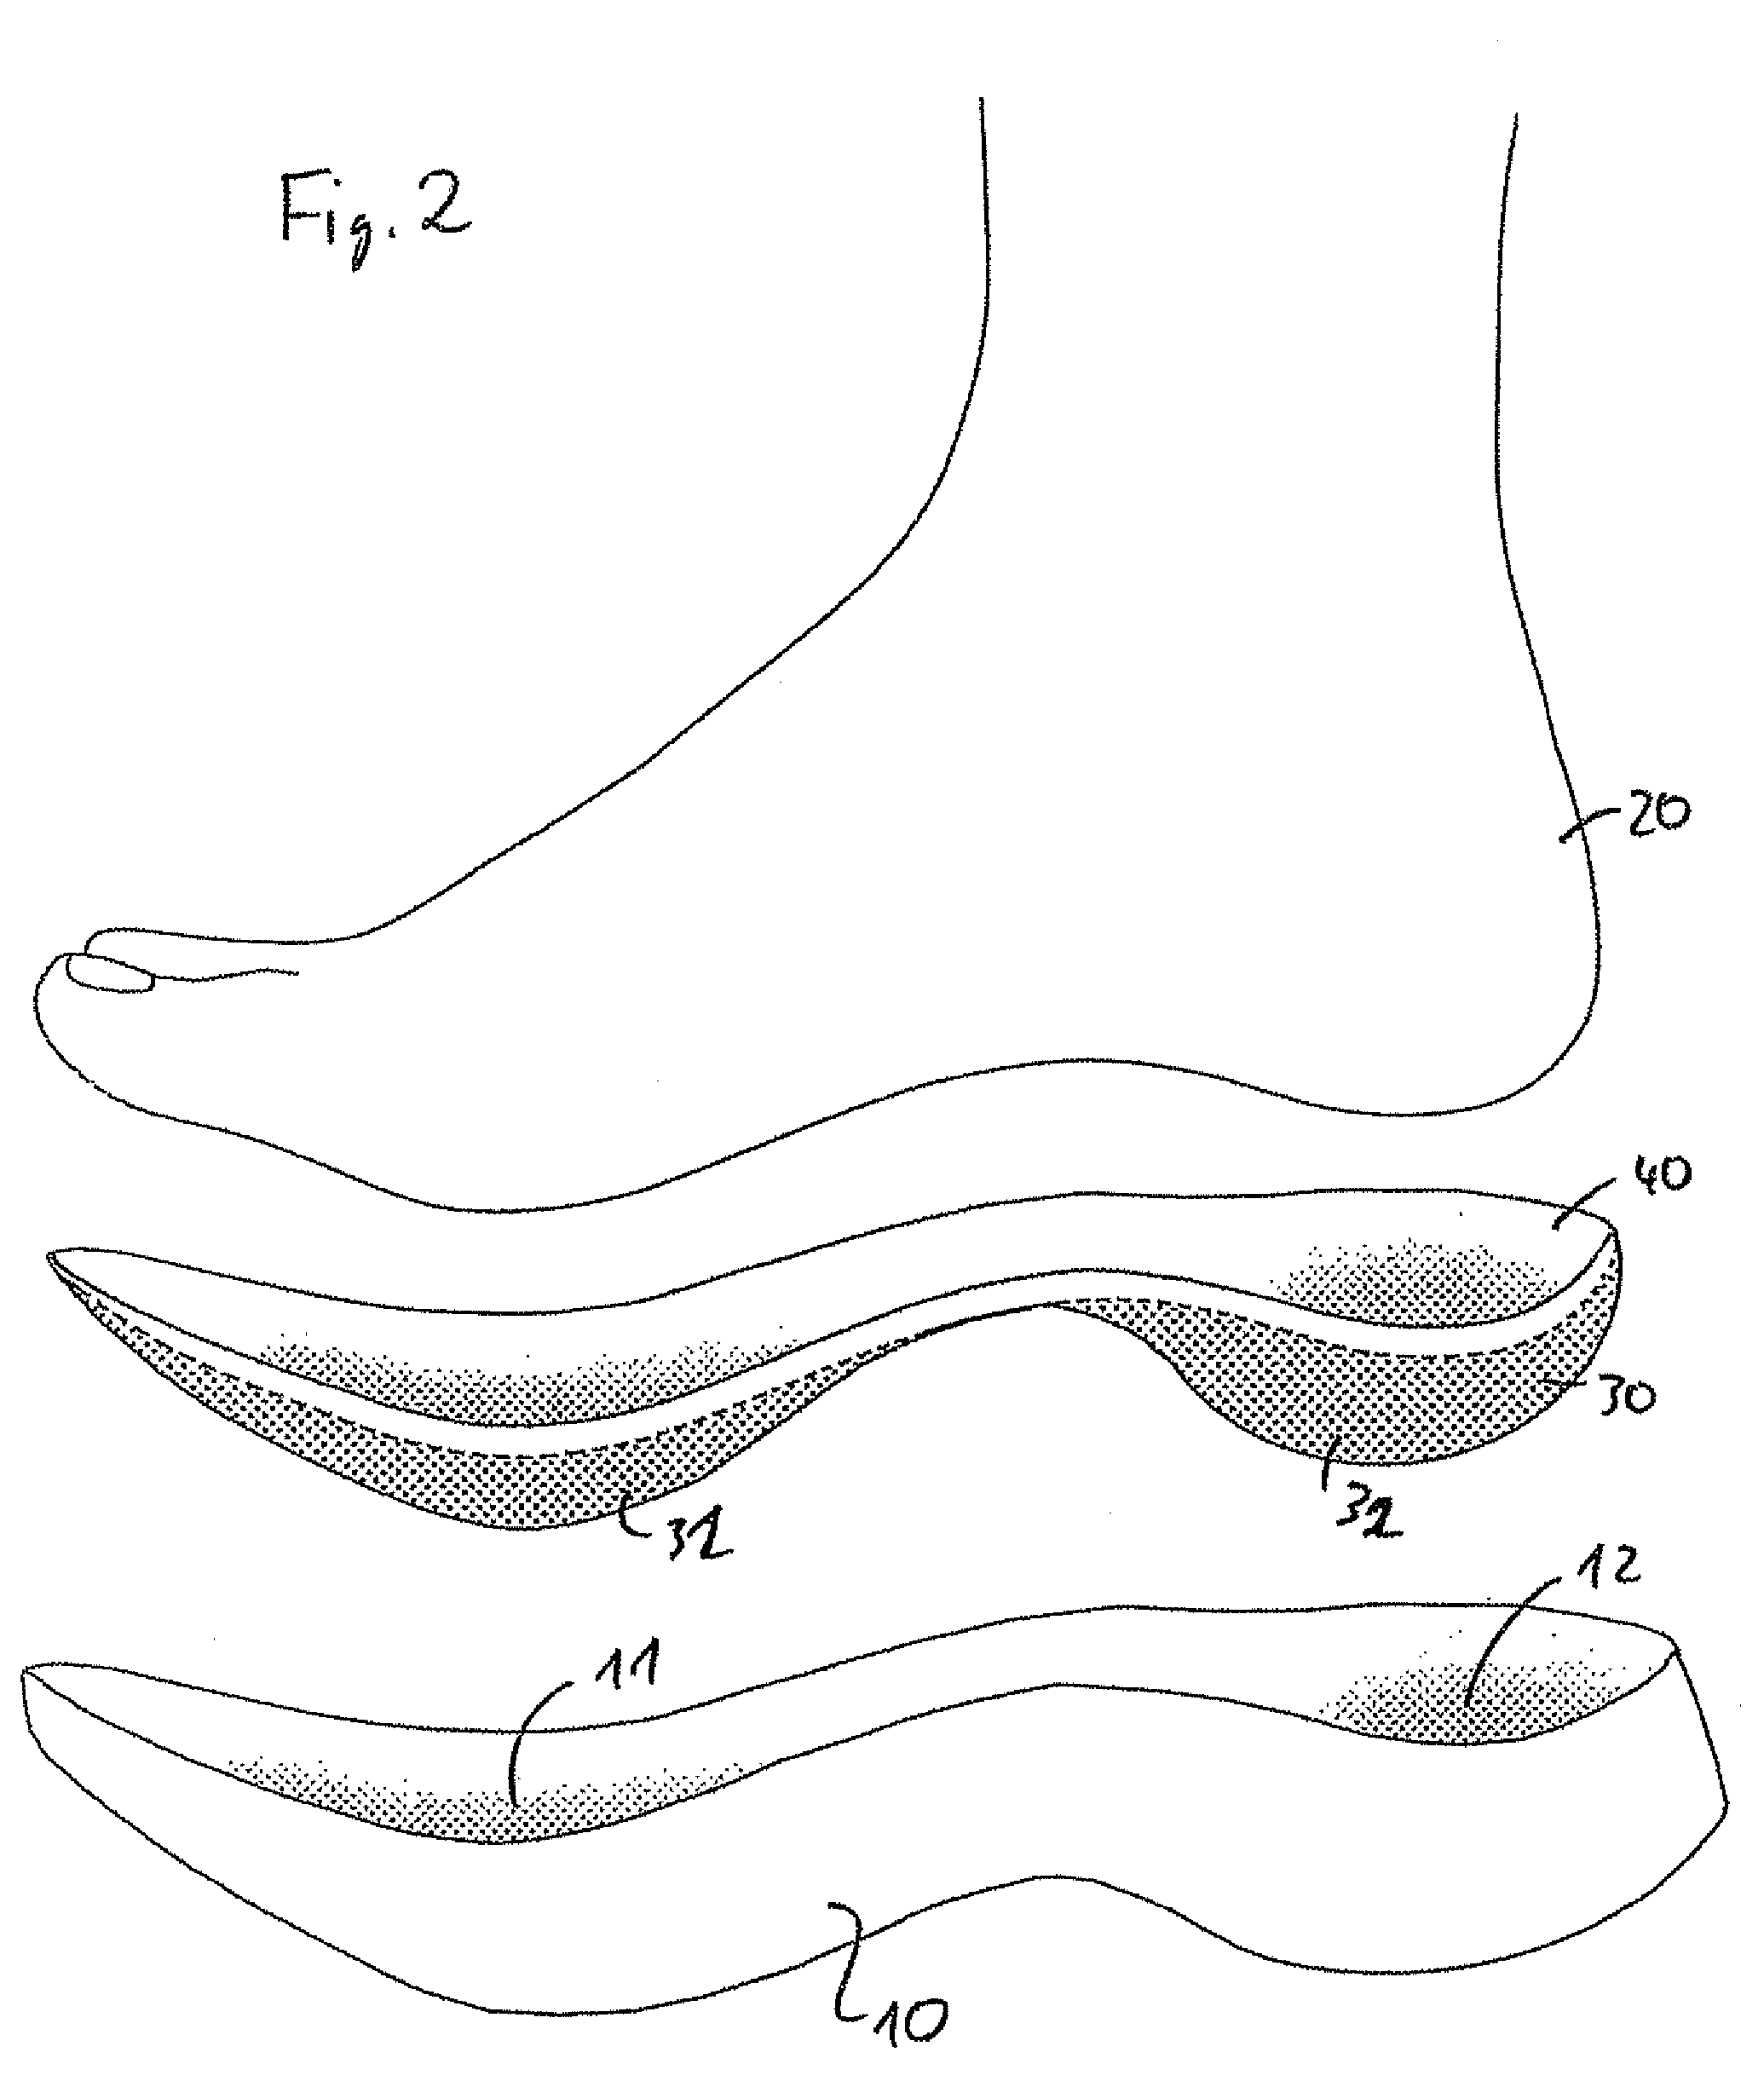 Shoe sole element